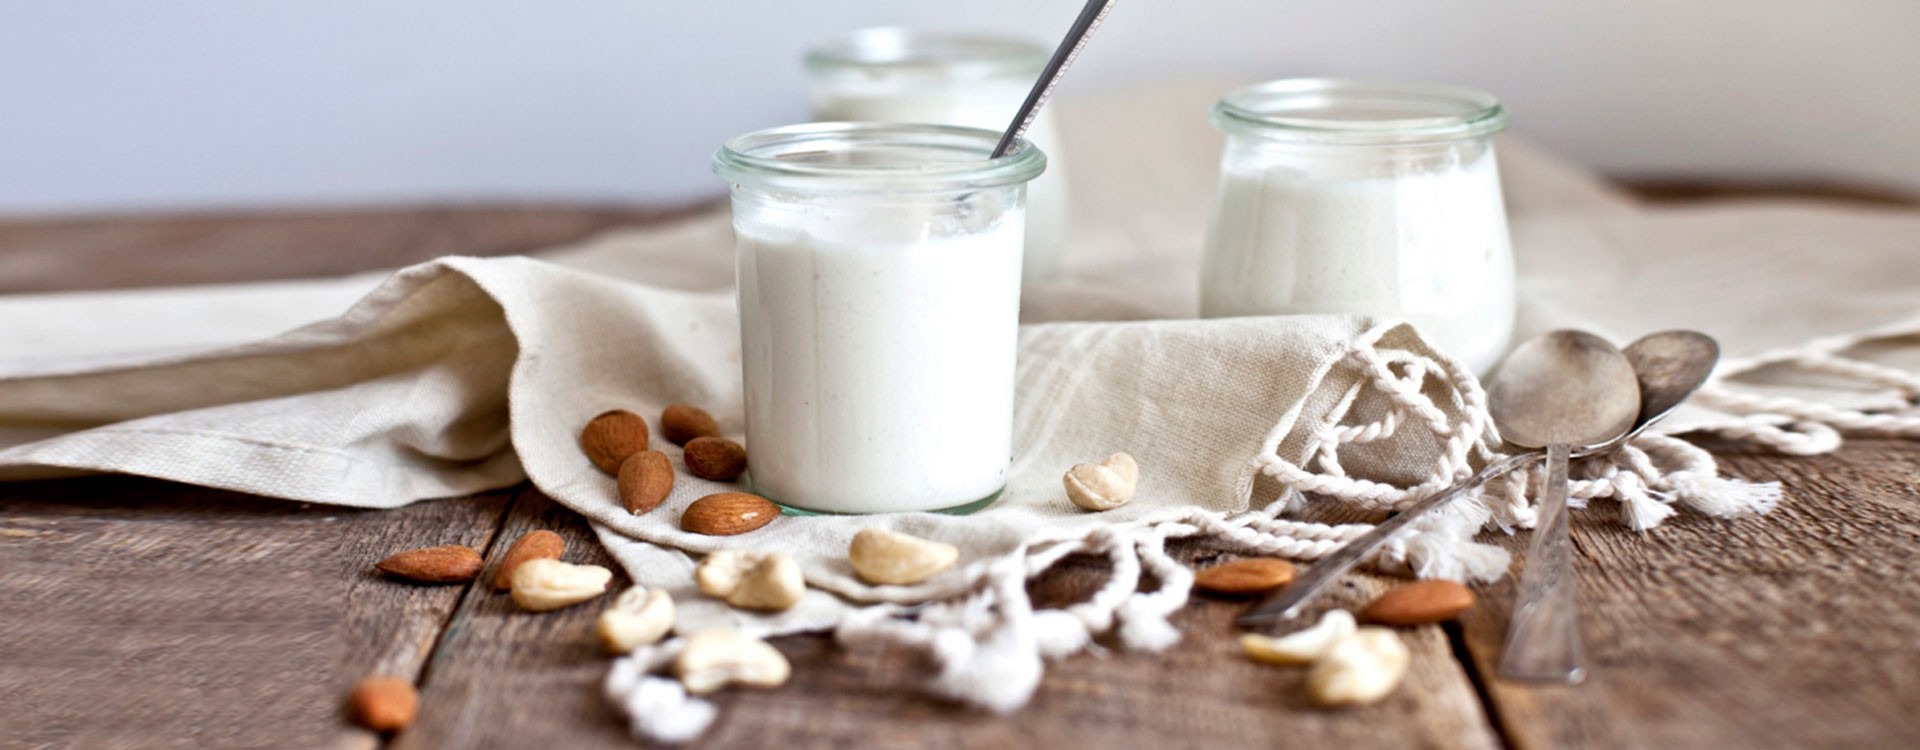 Yogurt vegetale di mandorla: la ricetta per farlo in casa